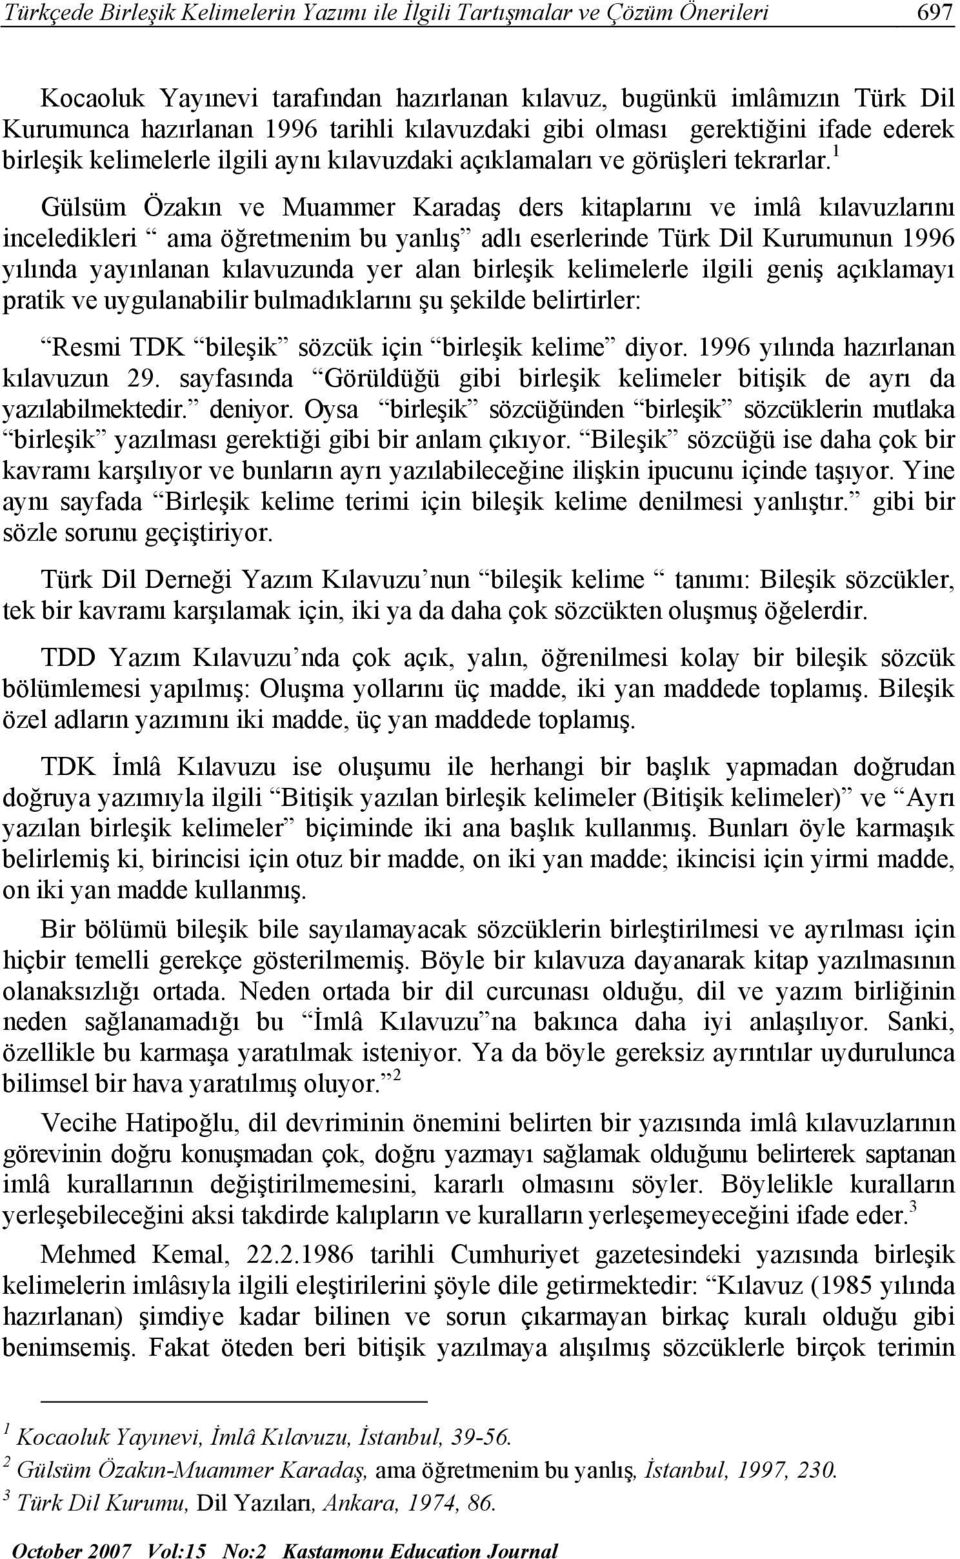 1 Gülsüm Özakın ve Muammer Karadaş ders kitaplarını ve imlâ kılavuzlarını inceledikleri ama öğretmenim bu yanlış adlı eserlerinde Türk Dil Kurumunun 1996 yılında yayınlanan kılavuzunda yer alan